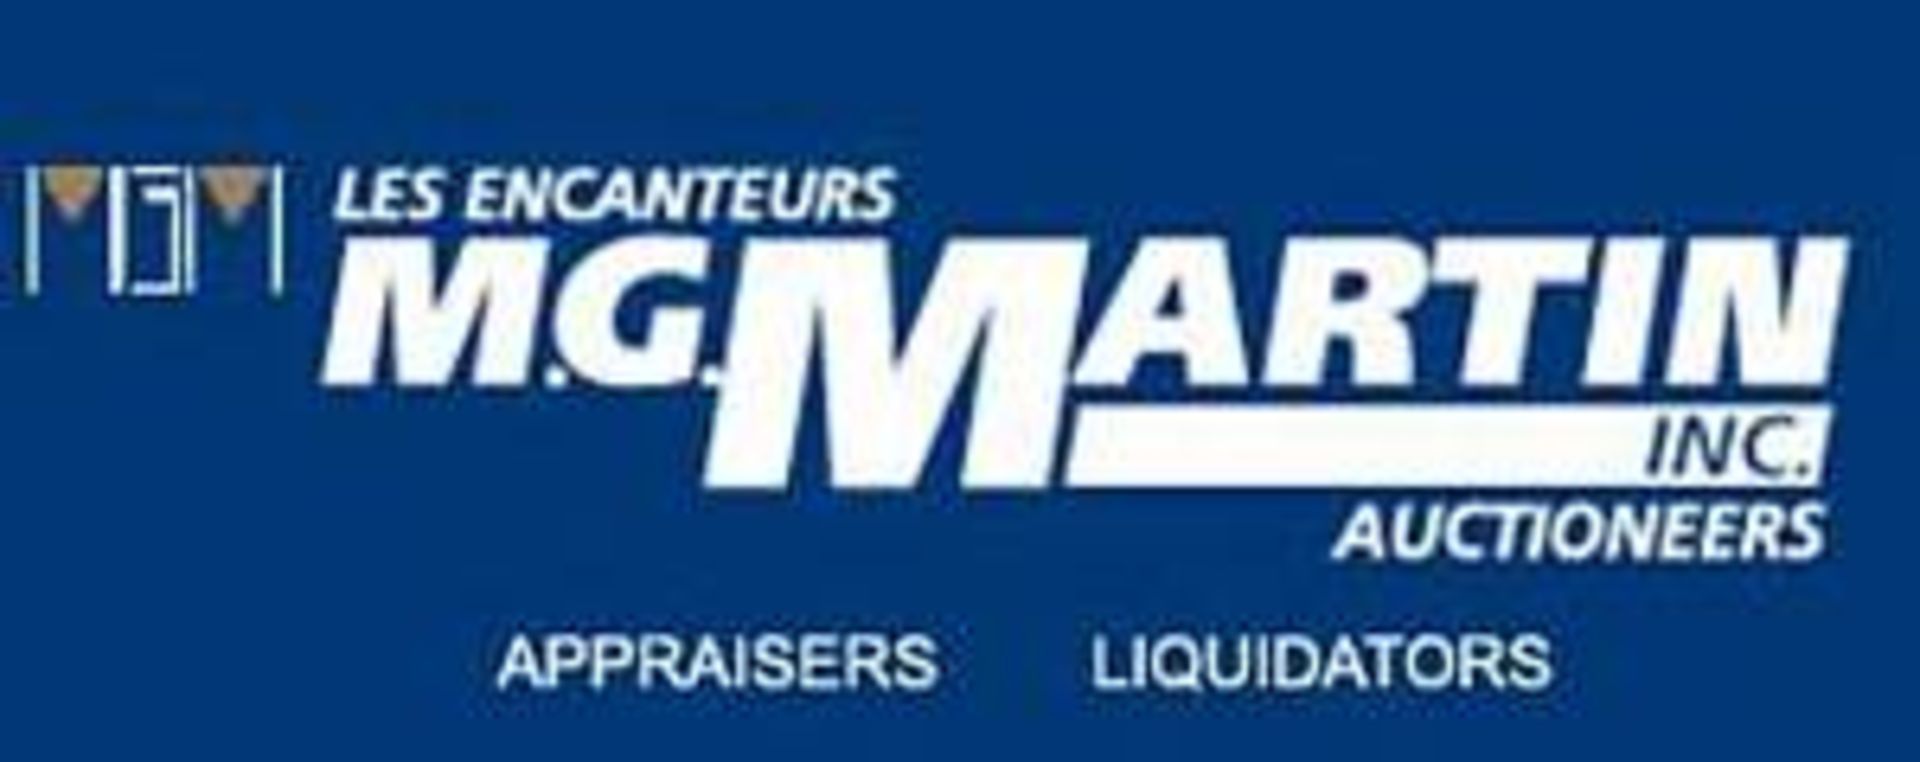 Les Encanteurs M. G. Martin Auctioneers Inc. - Image 2 of 2